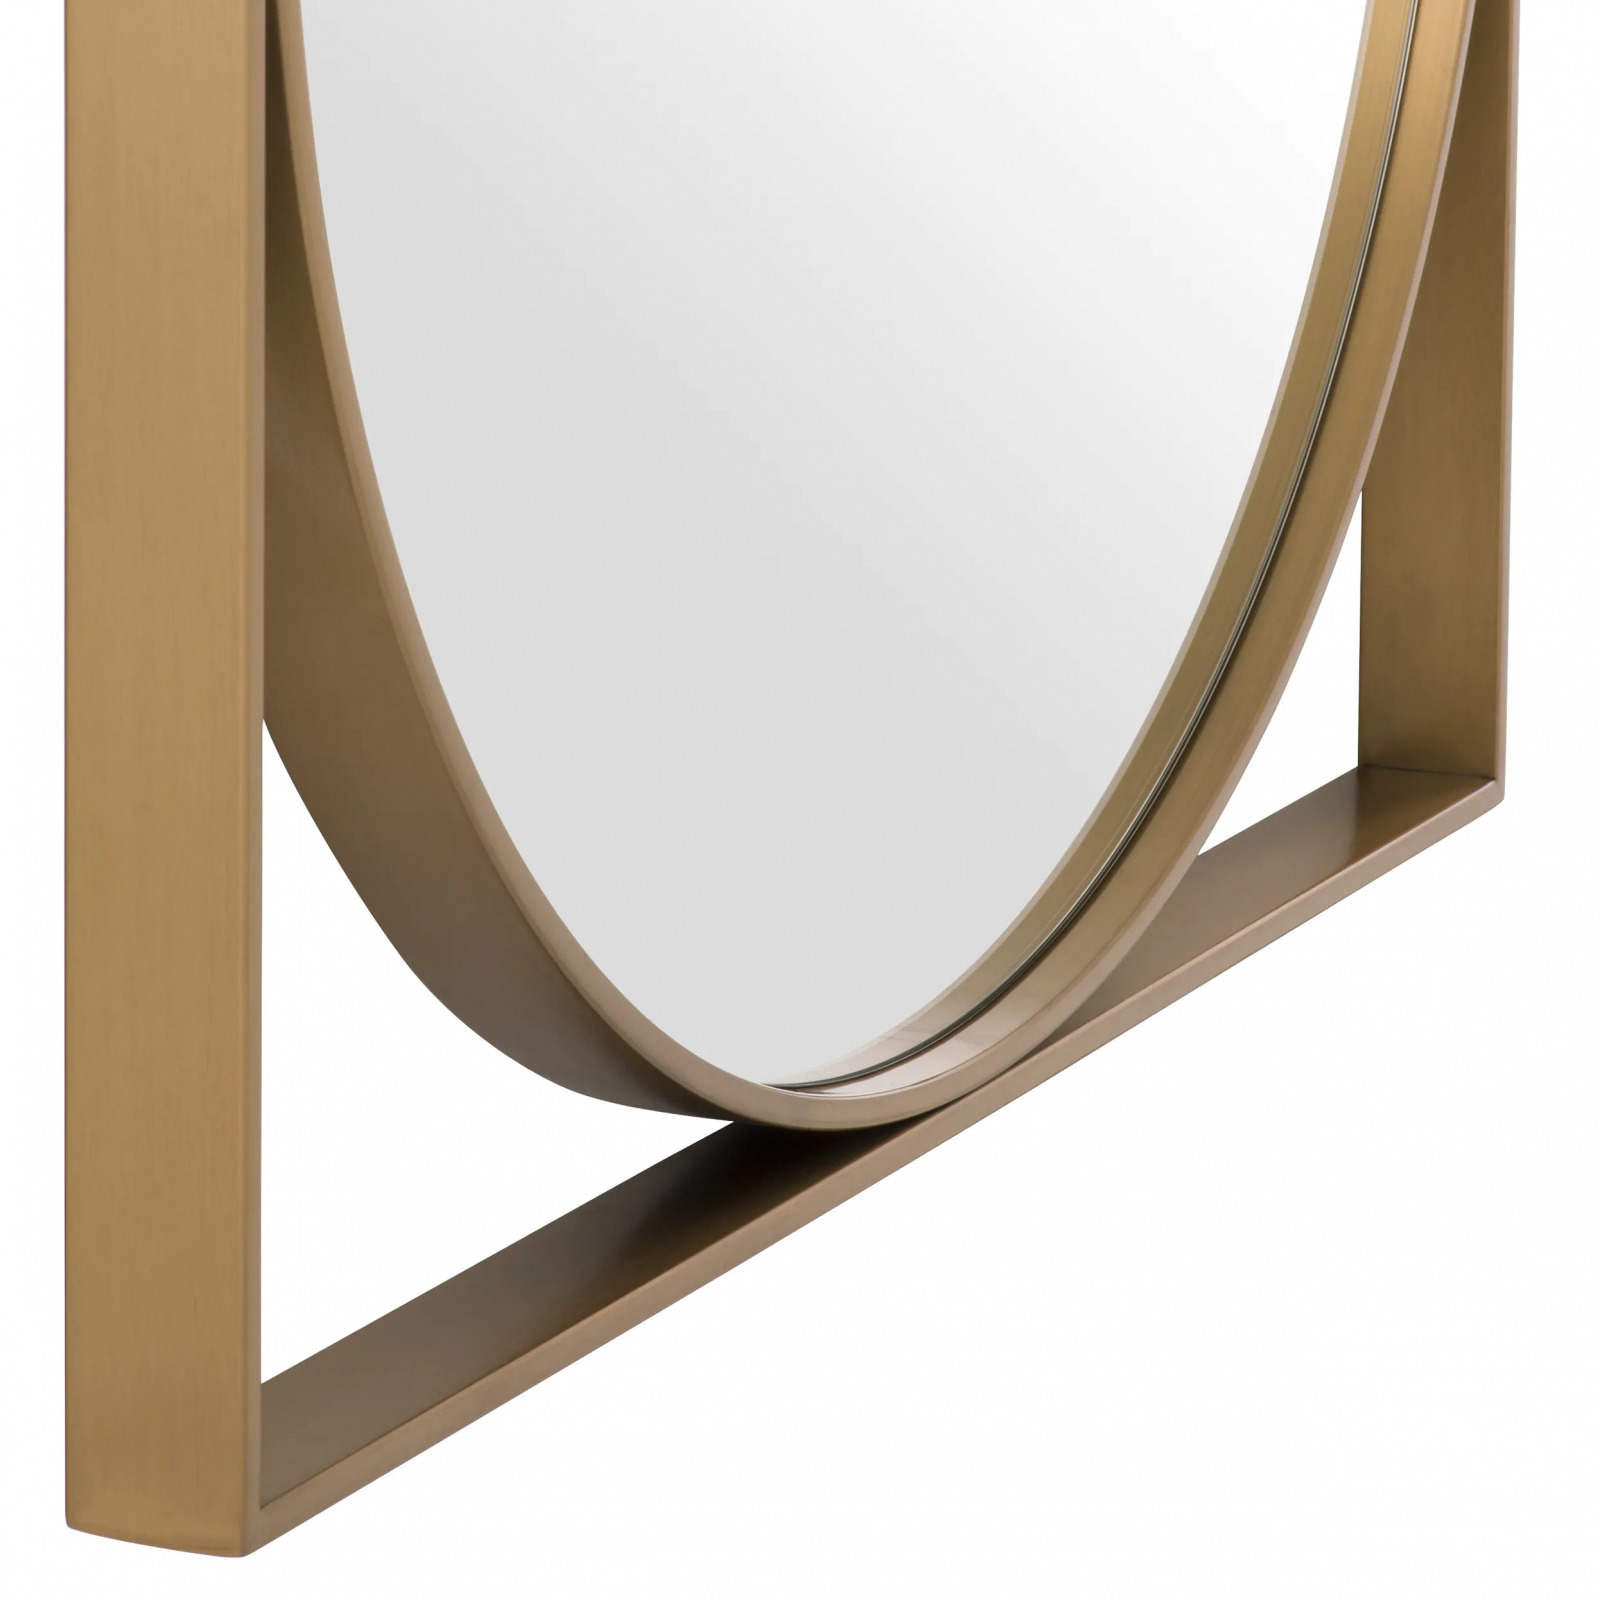 Montauk mirror